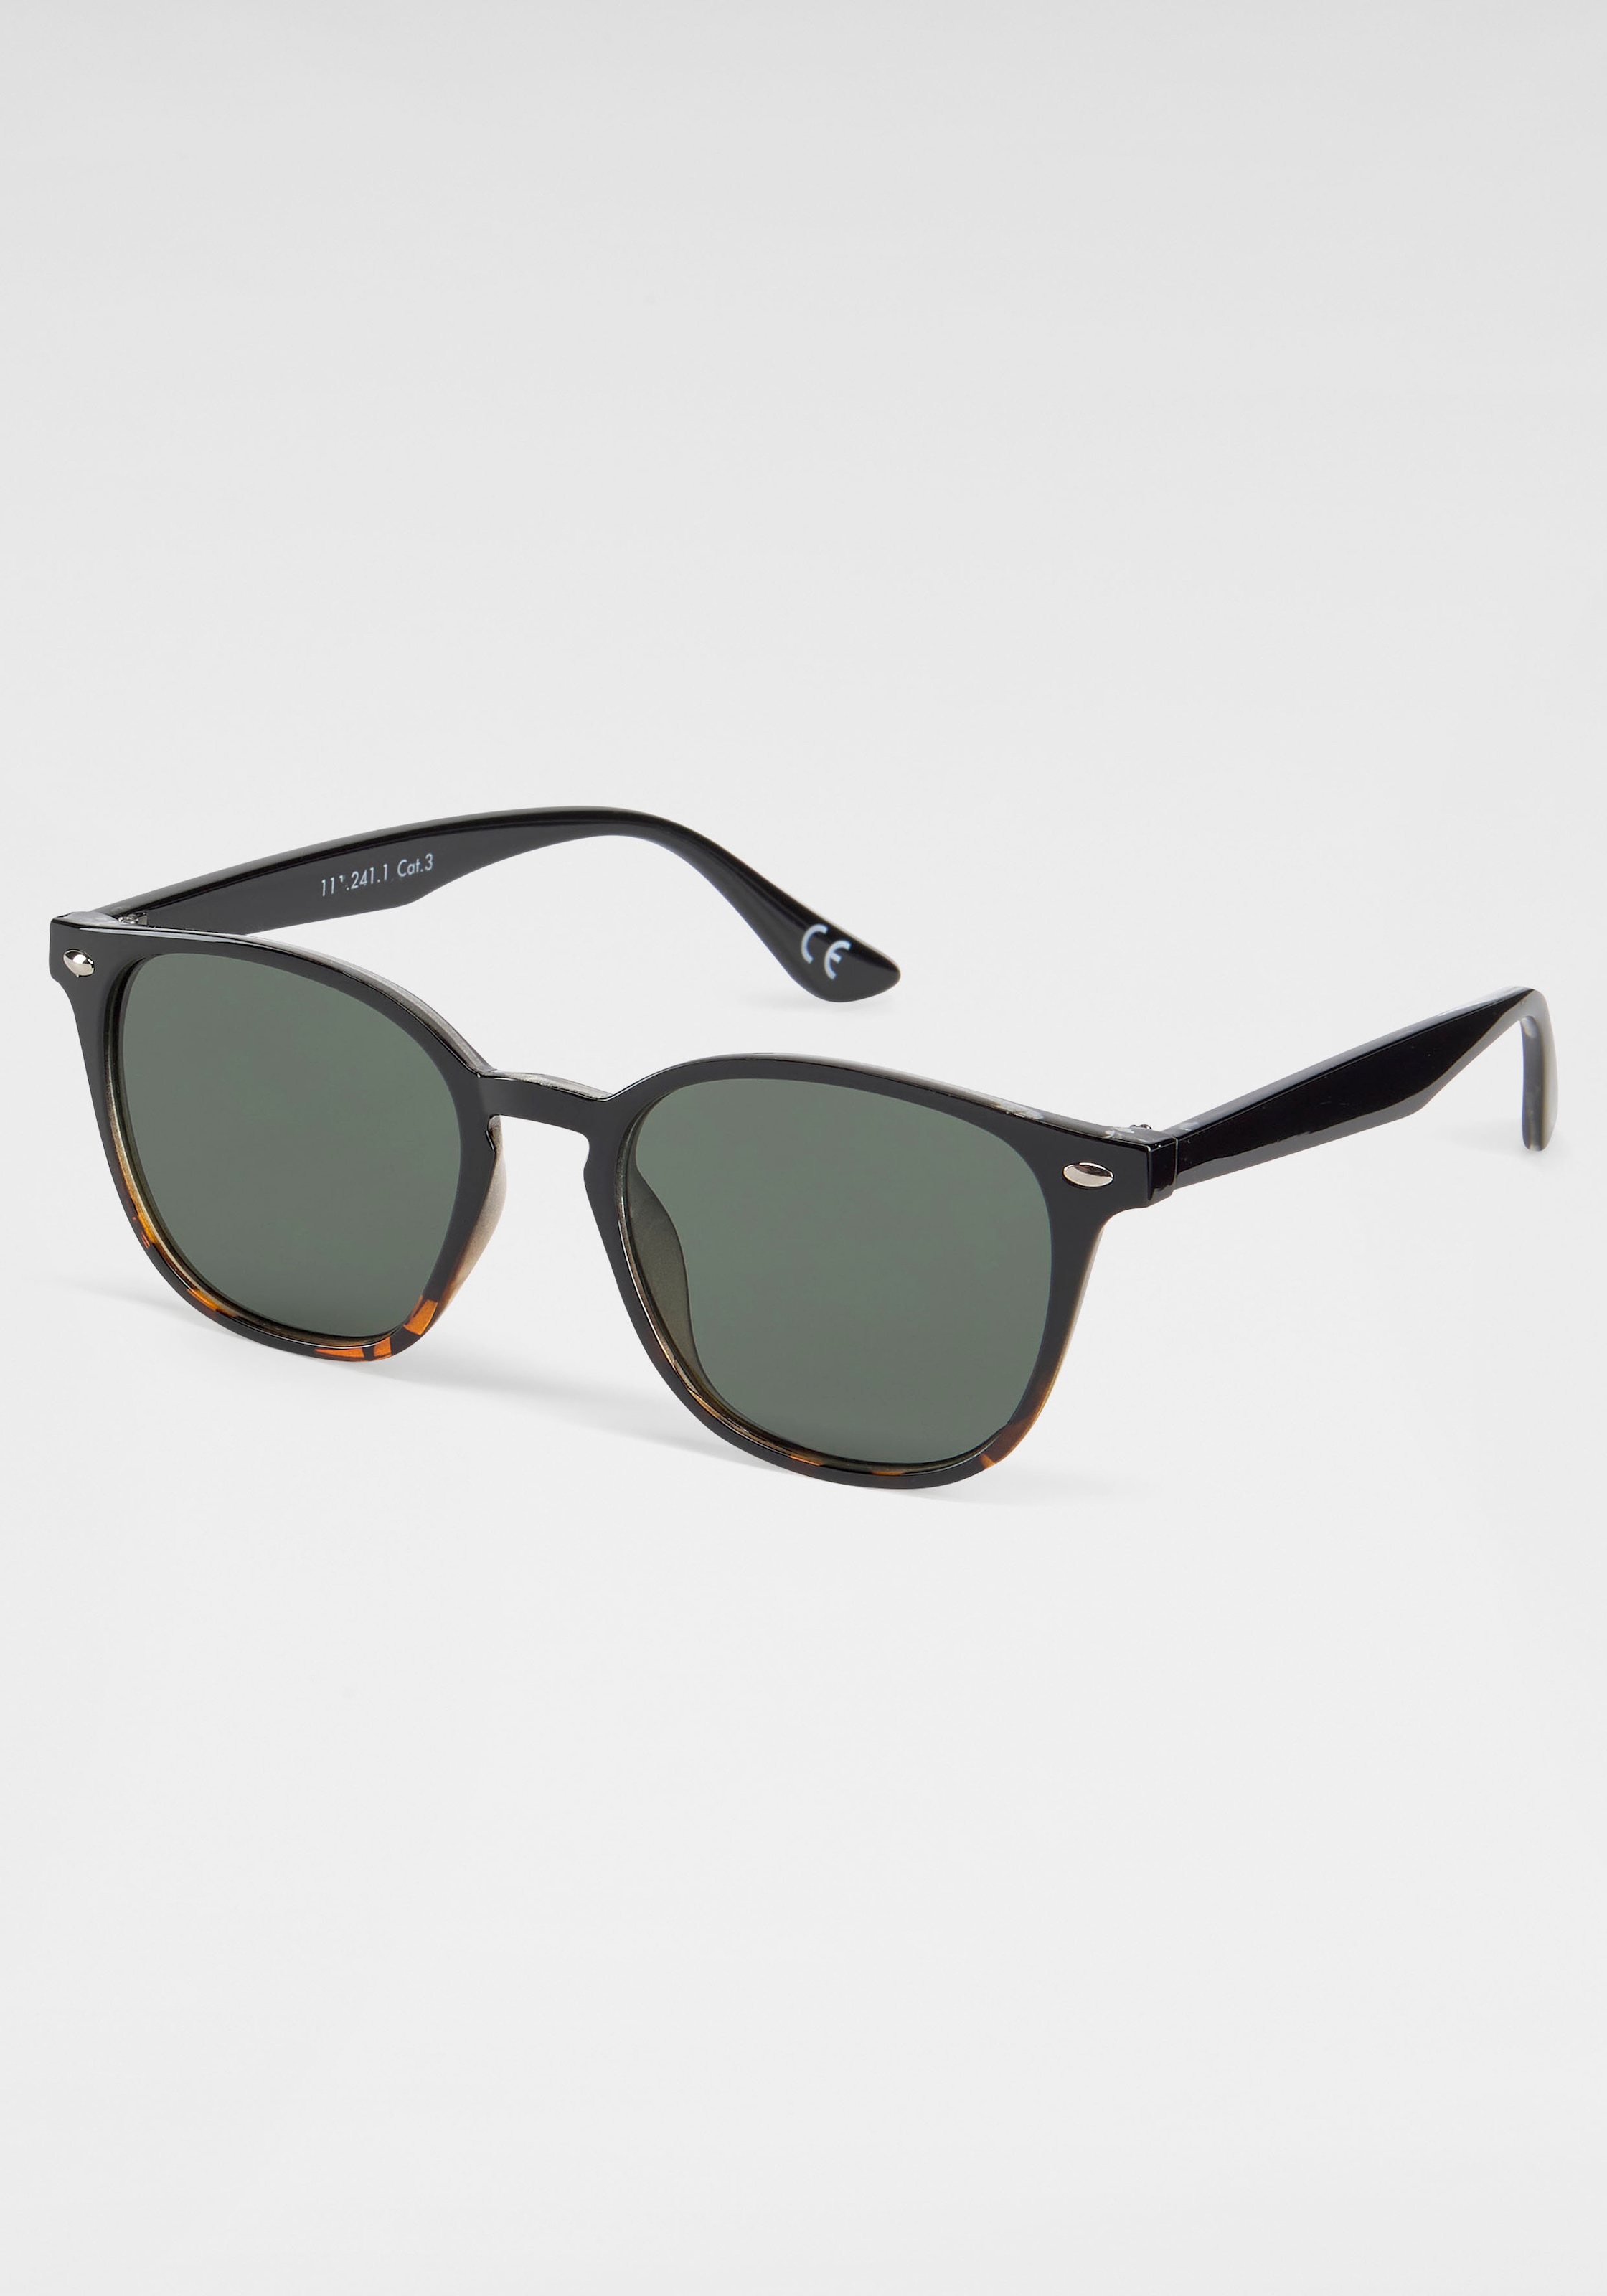 Sonnenbrille bei Eyewear online PRIMETTA OTTO kaufen